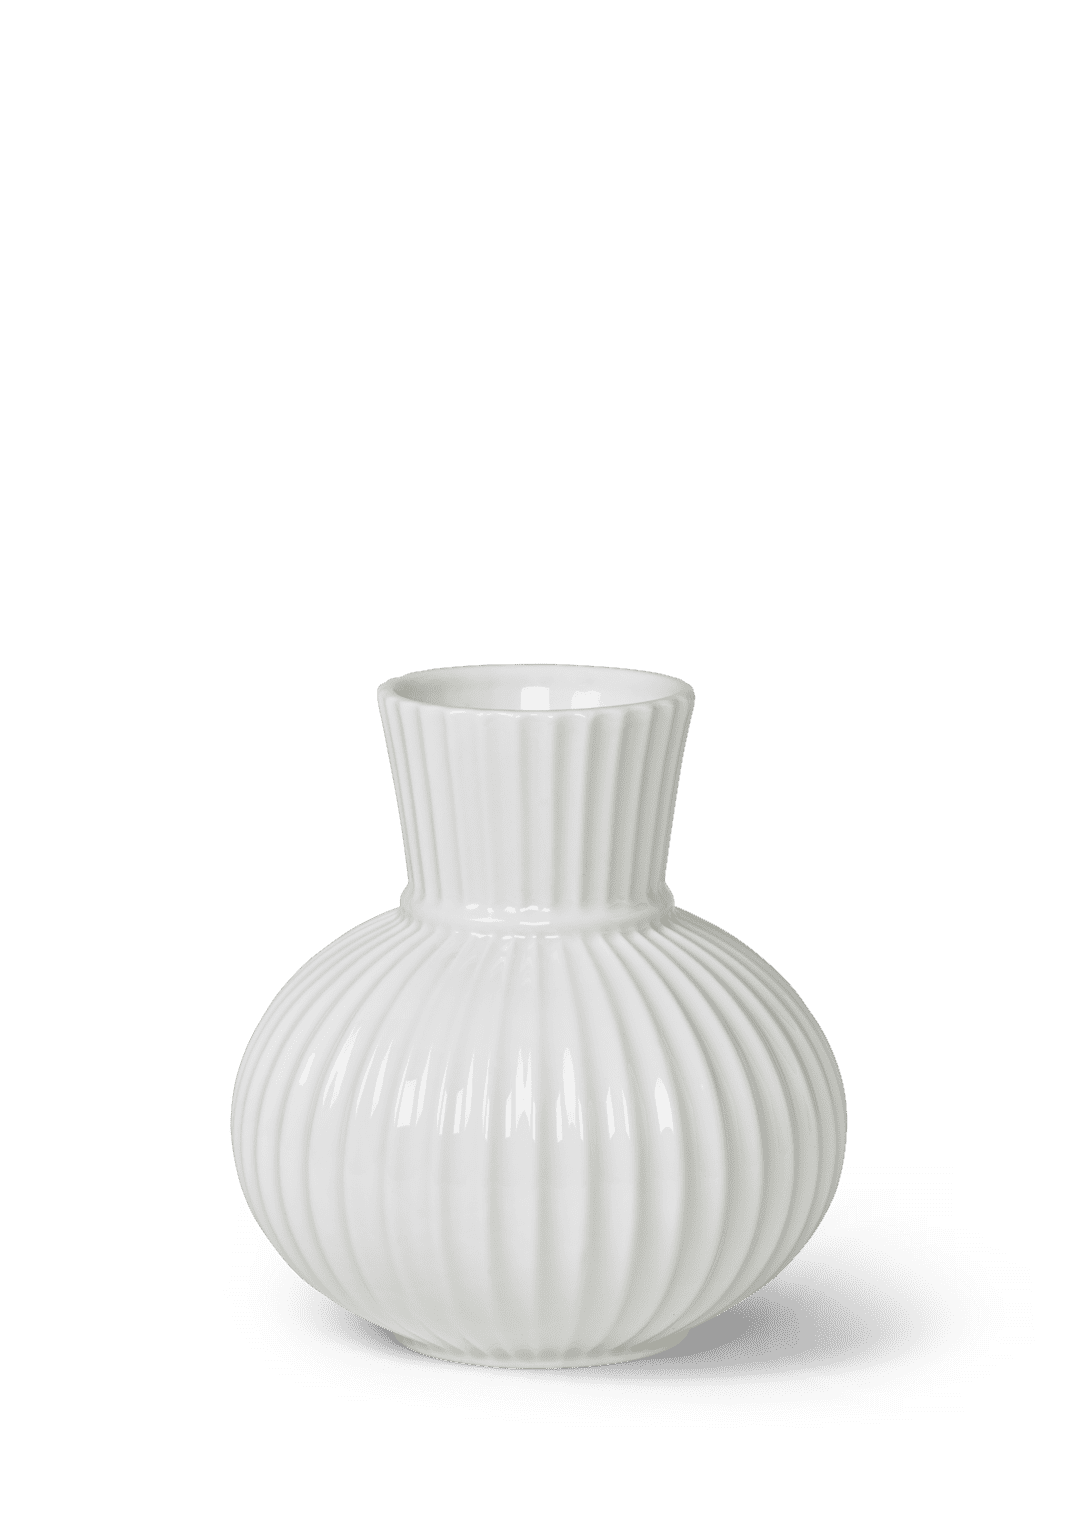 Lyngby Tura Vase white porcelain H14.5 H: 5.7" Ø: 5.3"